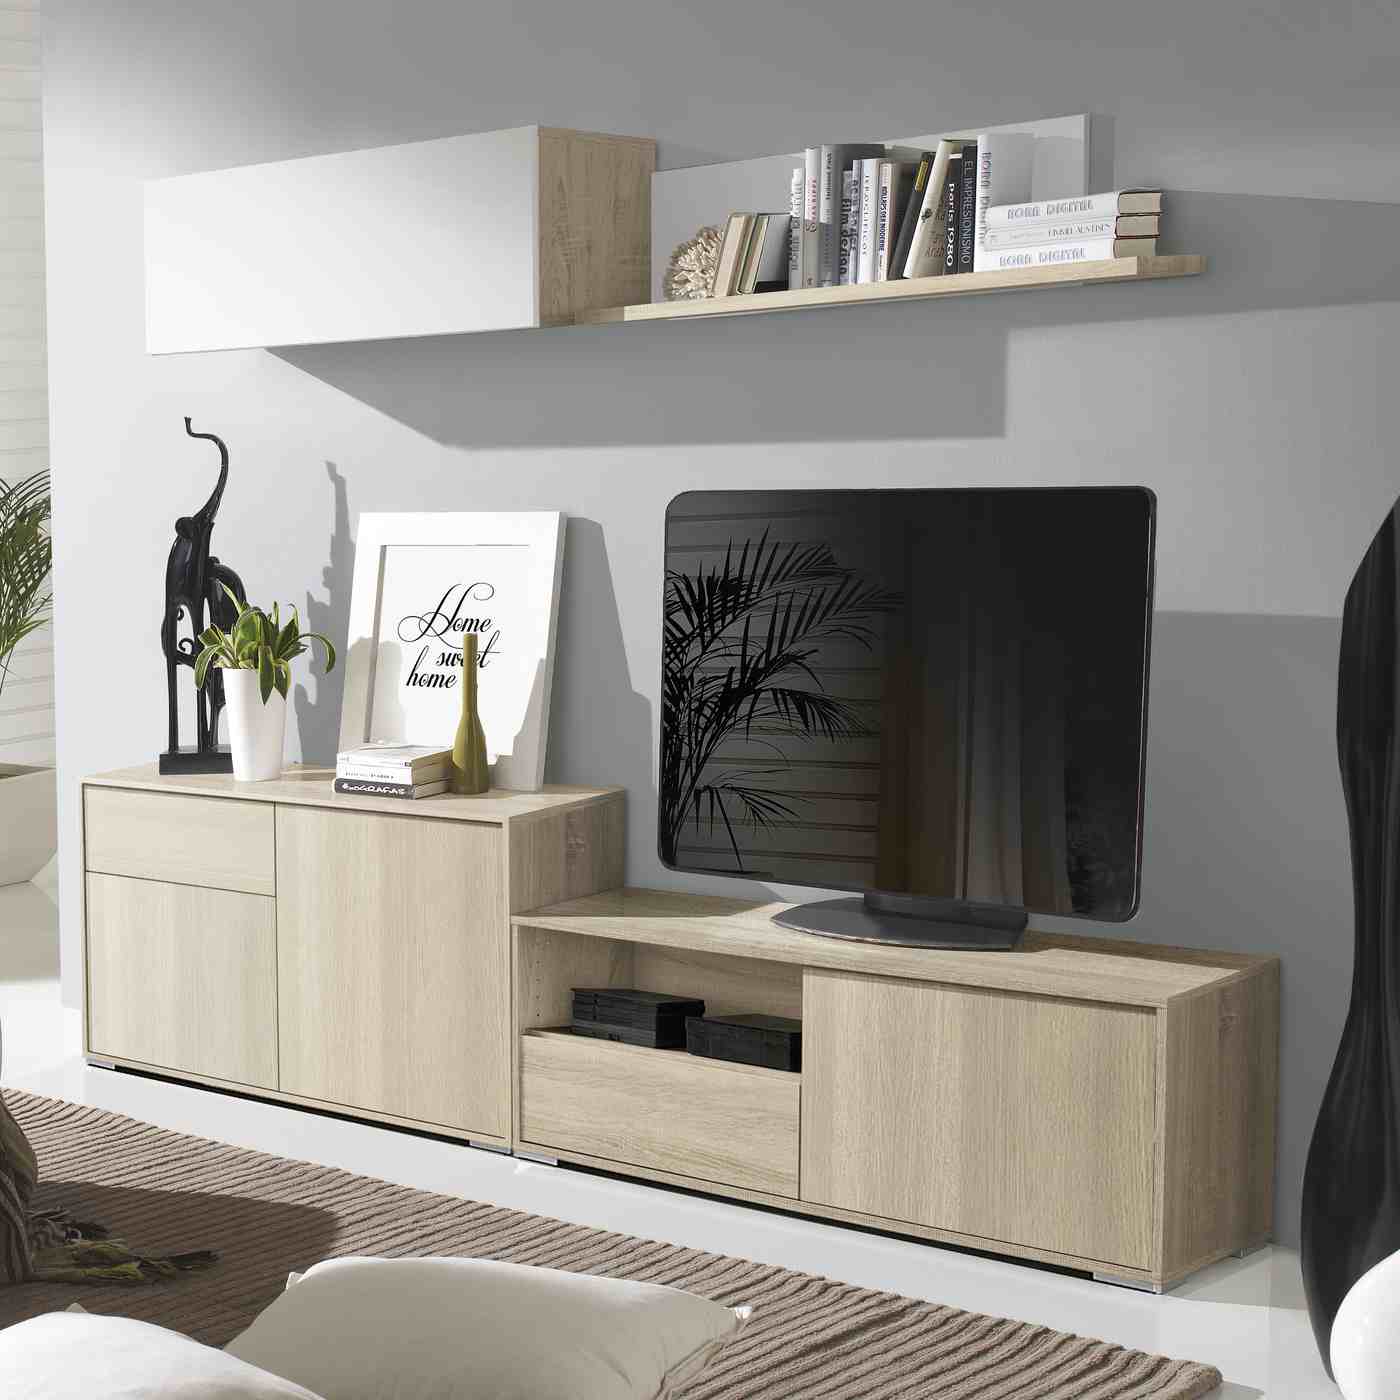 Composción para salón/comedor: Mueble TV + Aparador + Modulo alto + Estante. Posibilidad de elegir colores